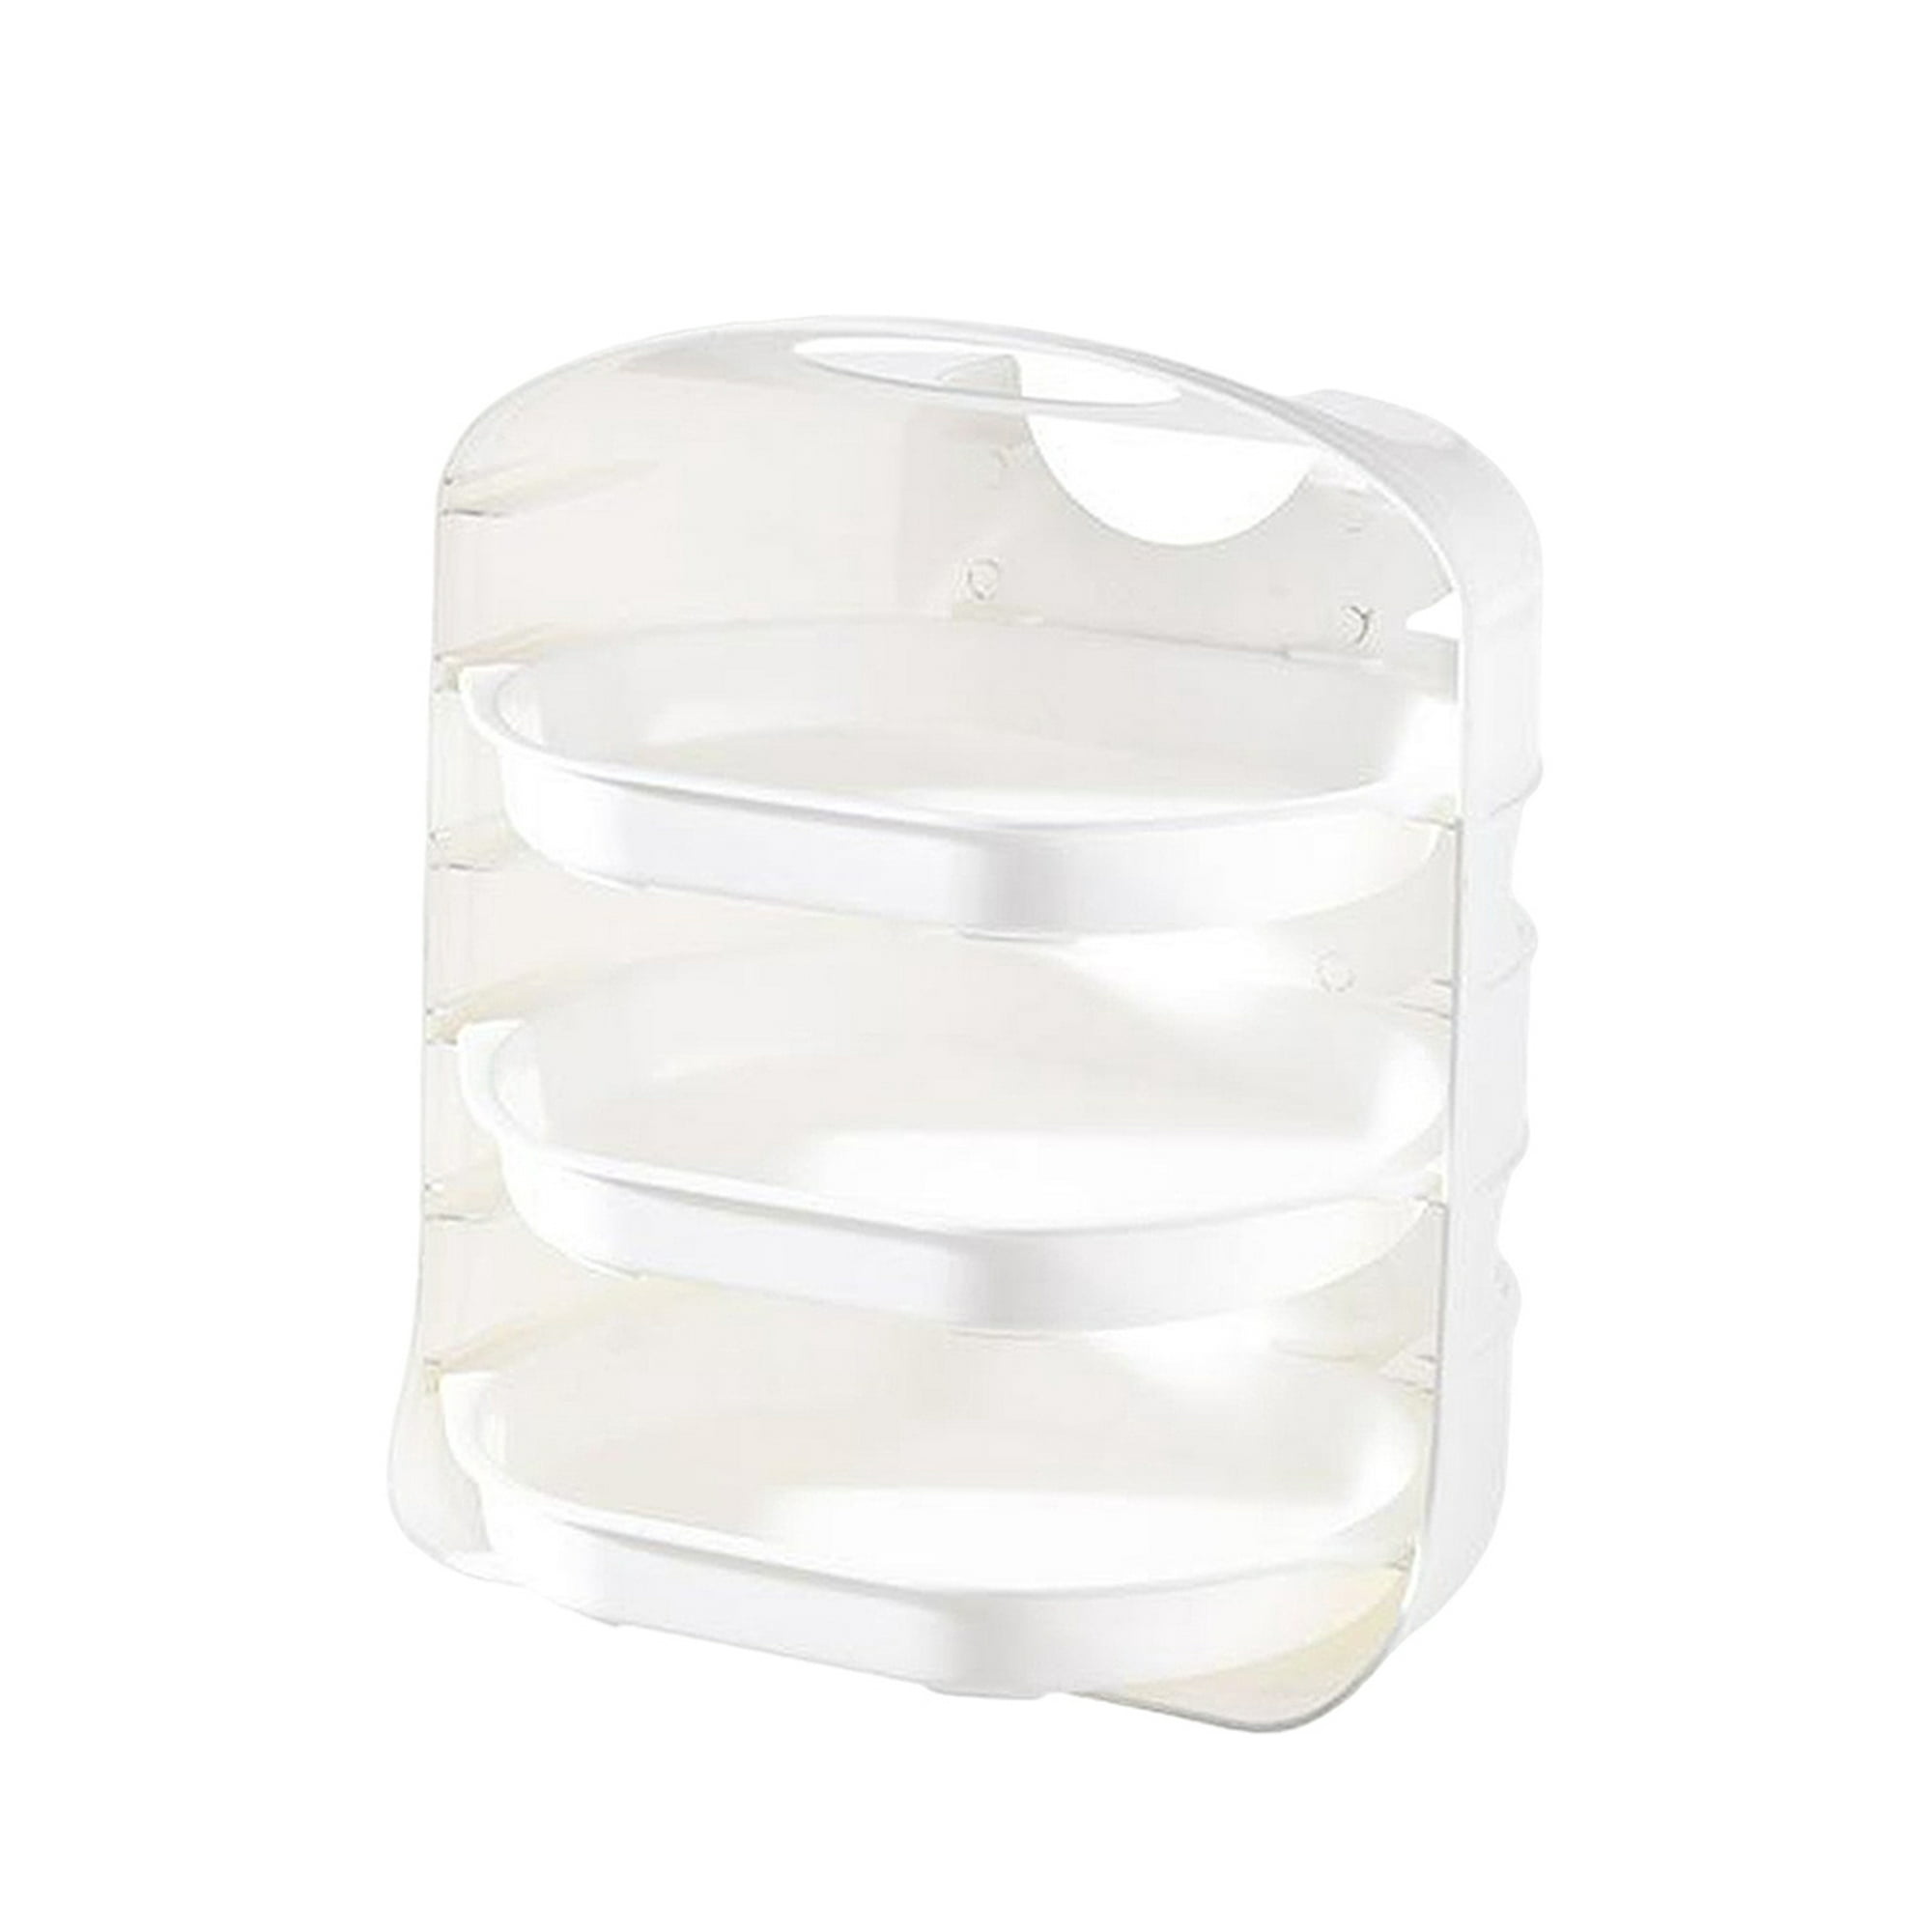 Multi-capa Superposable vajilla de almacenamiento bandeja soporte para cocina  organizador armario placa ahorrar espacio - Azul blanco 6 capas Sunnimix  rejillas para platos